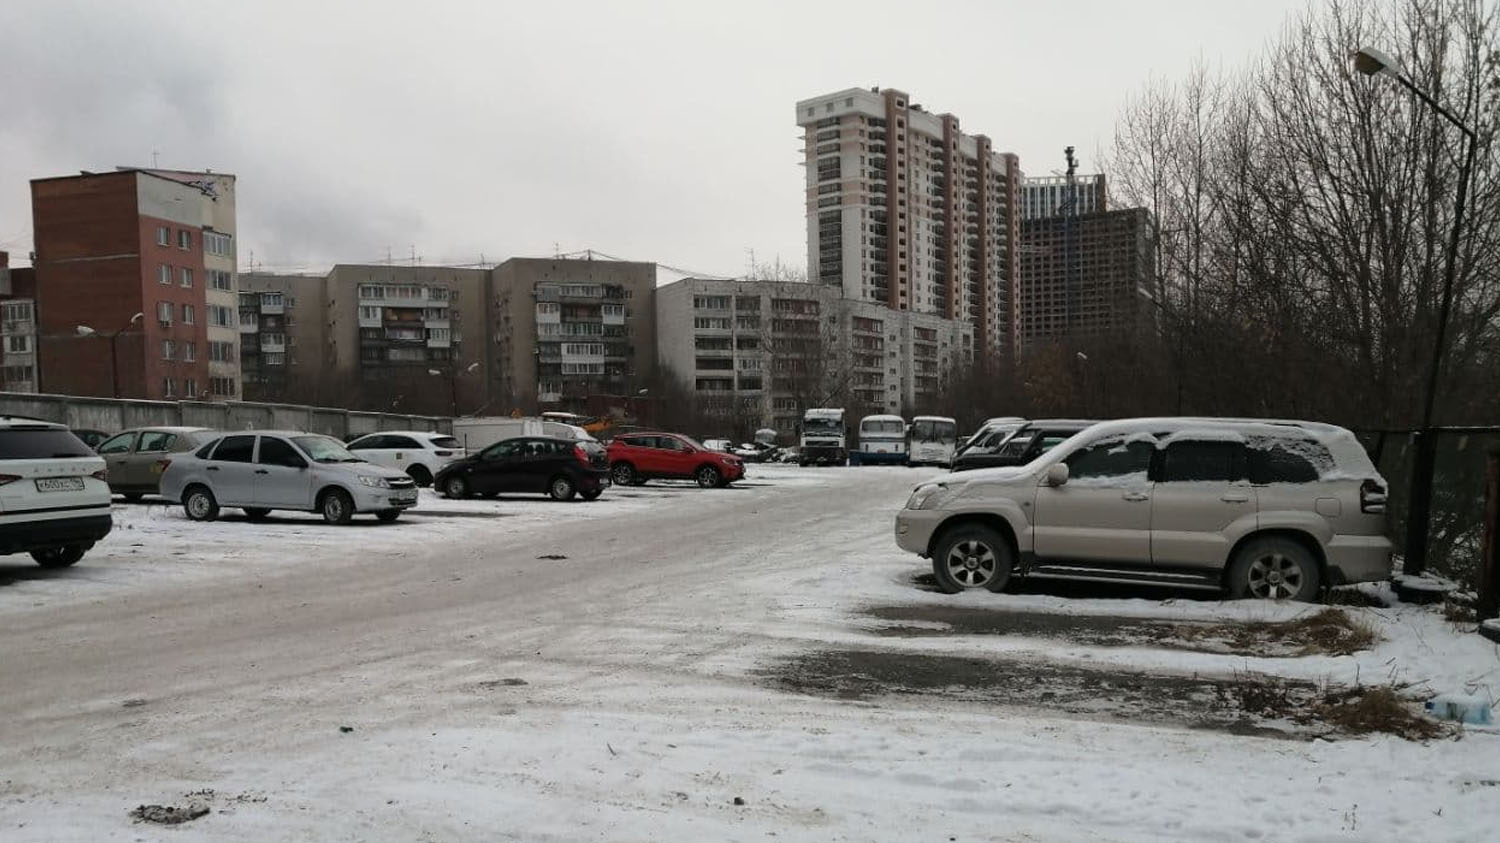 Незаконная парковка на Кимовской 12 несмотря на нелегальность, продолжает работать и приносить доходы преступникам